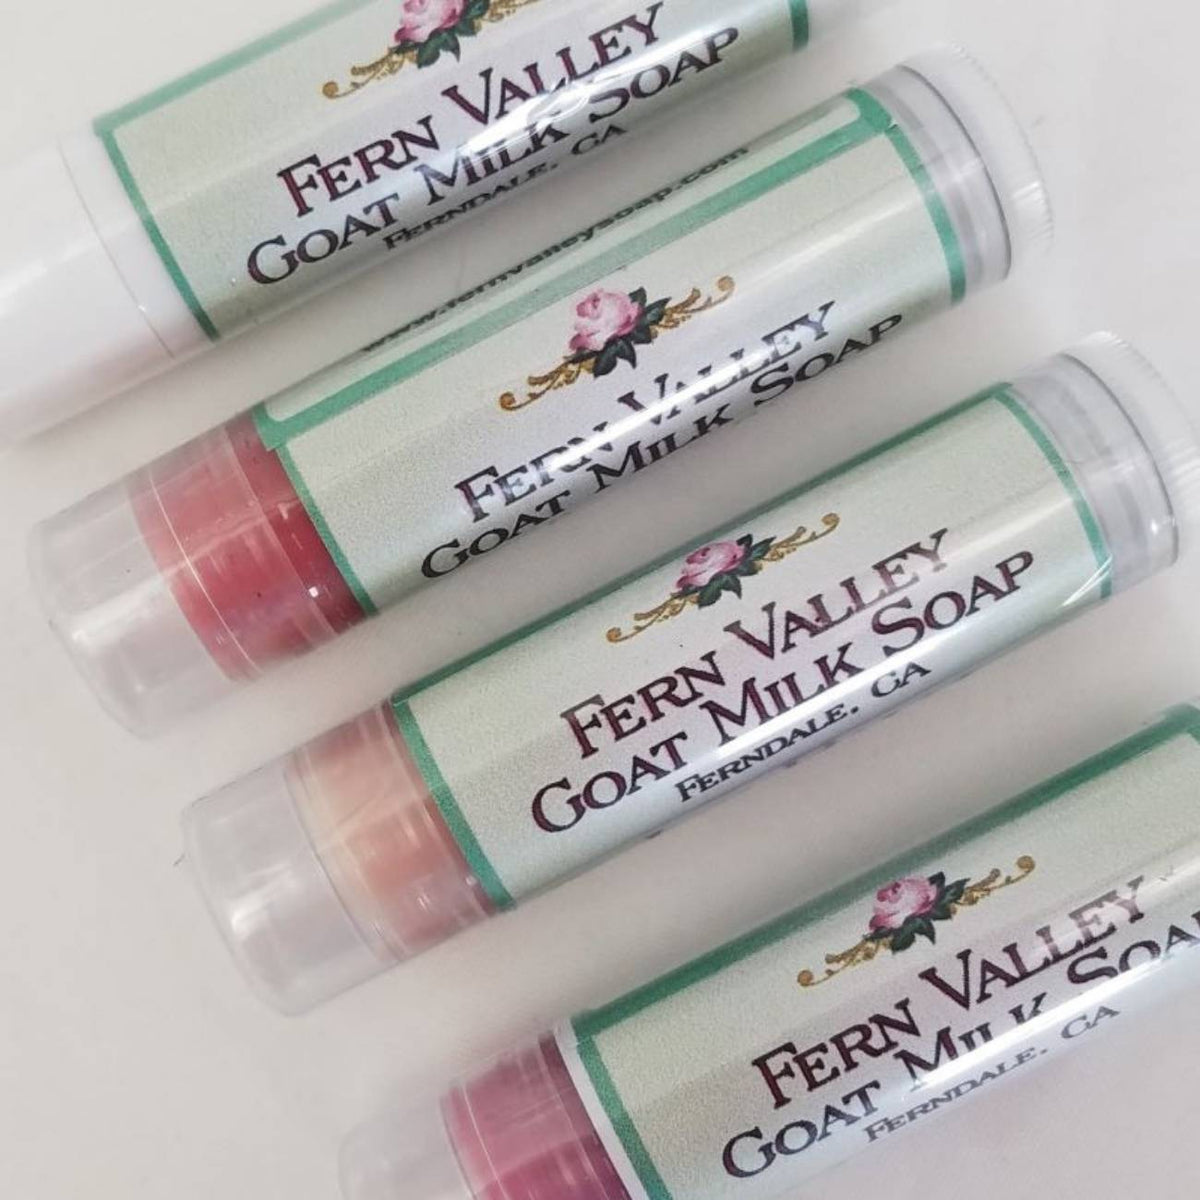 Natural Handmade Lip Balm | Fern Valley Goat Milk Soap | Sampler Box